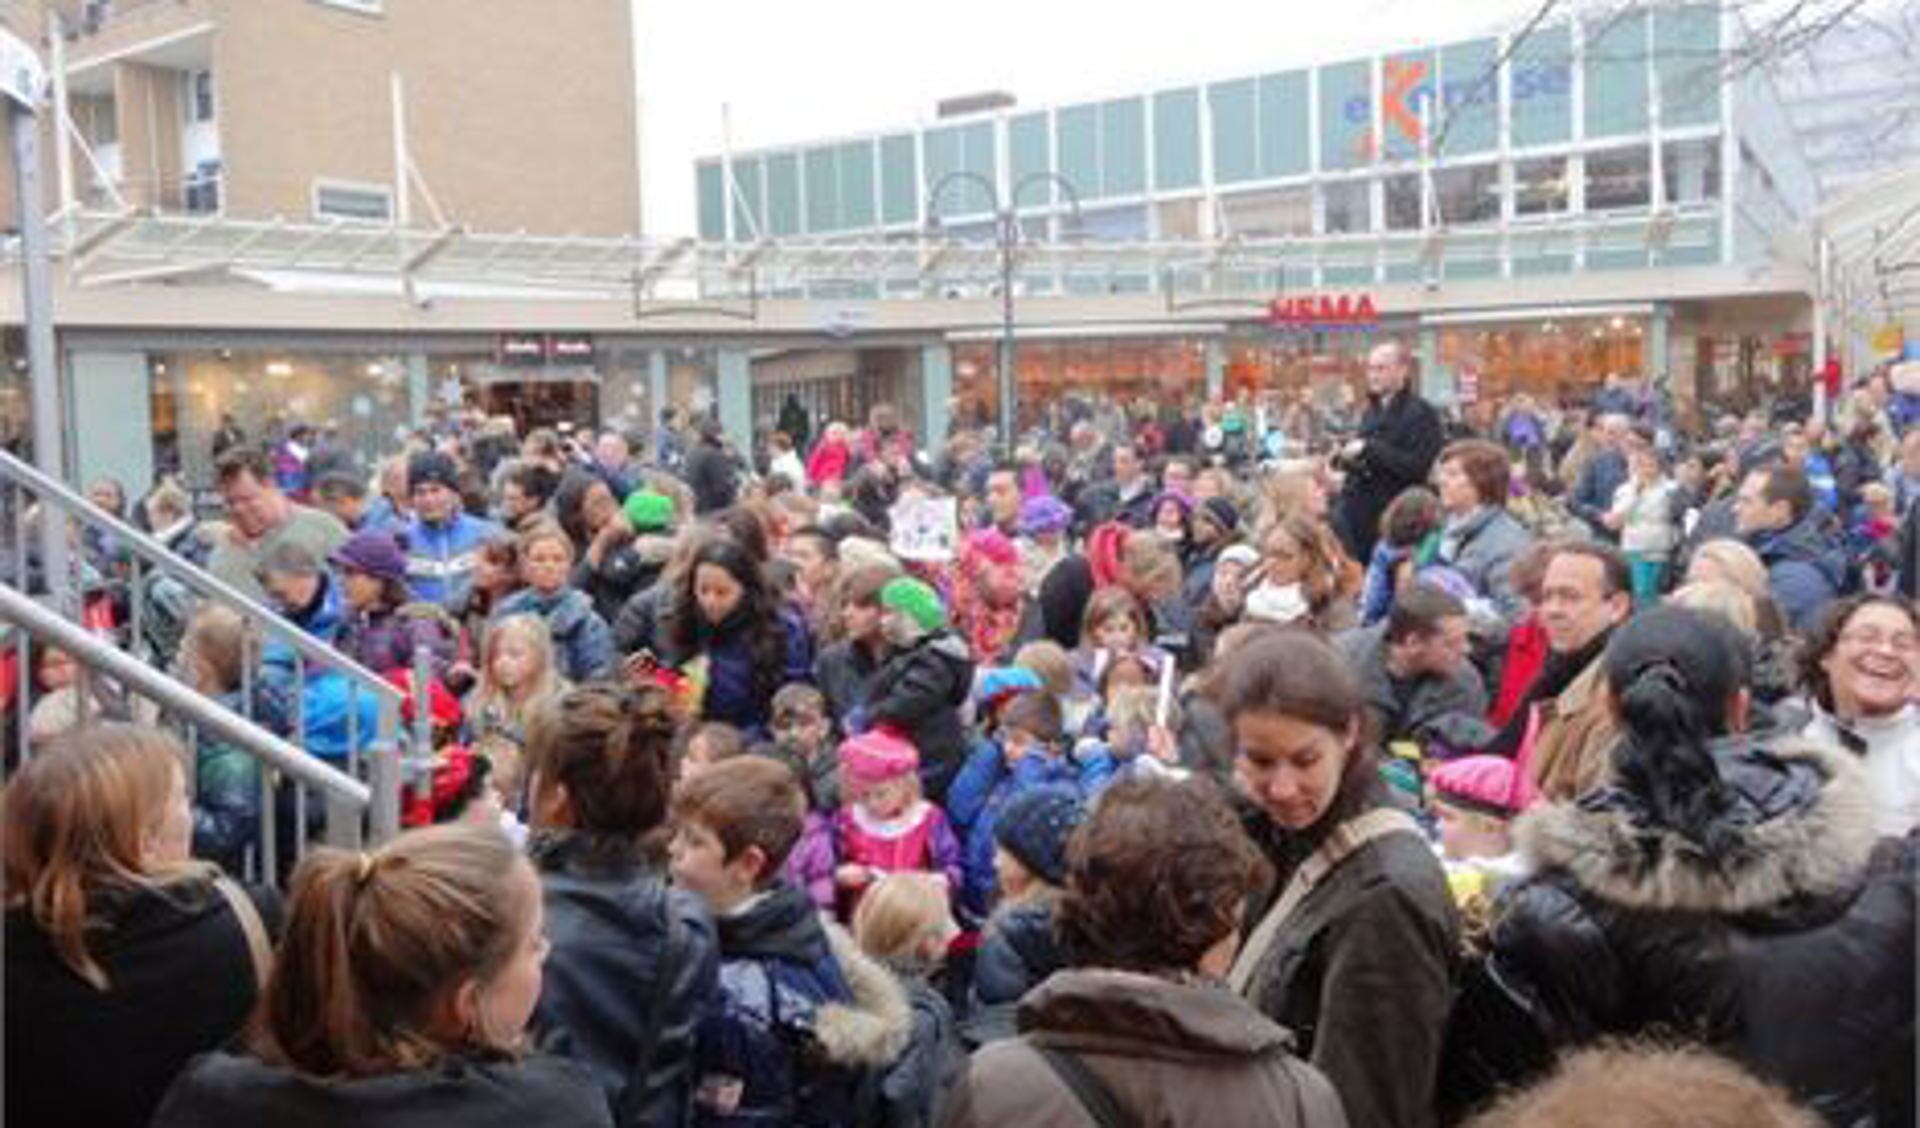 Honderden mensen kwamen De Sint begroeten (foto: Ap de Heus)